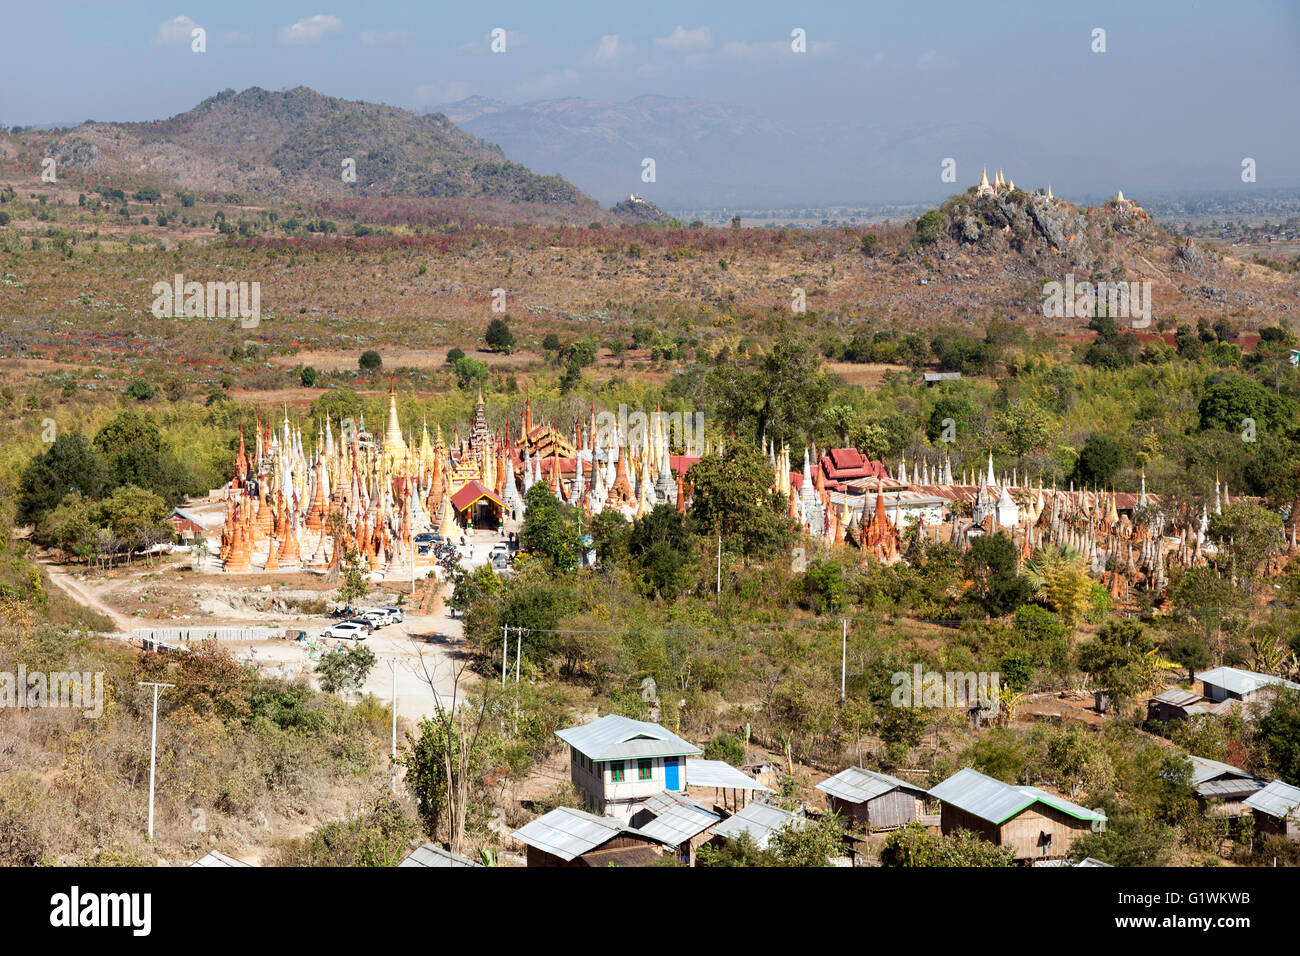 Le village de Inthein au sud ouest de l'Inle Lake avec sa masse de fait de pagodes (Myanmar). Inthein, près du lac Inlé. Banque D'Images